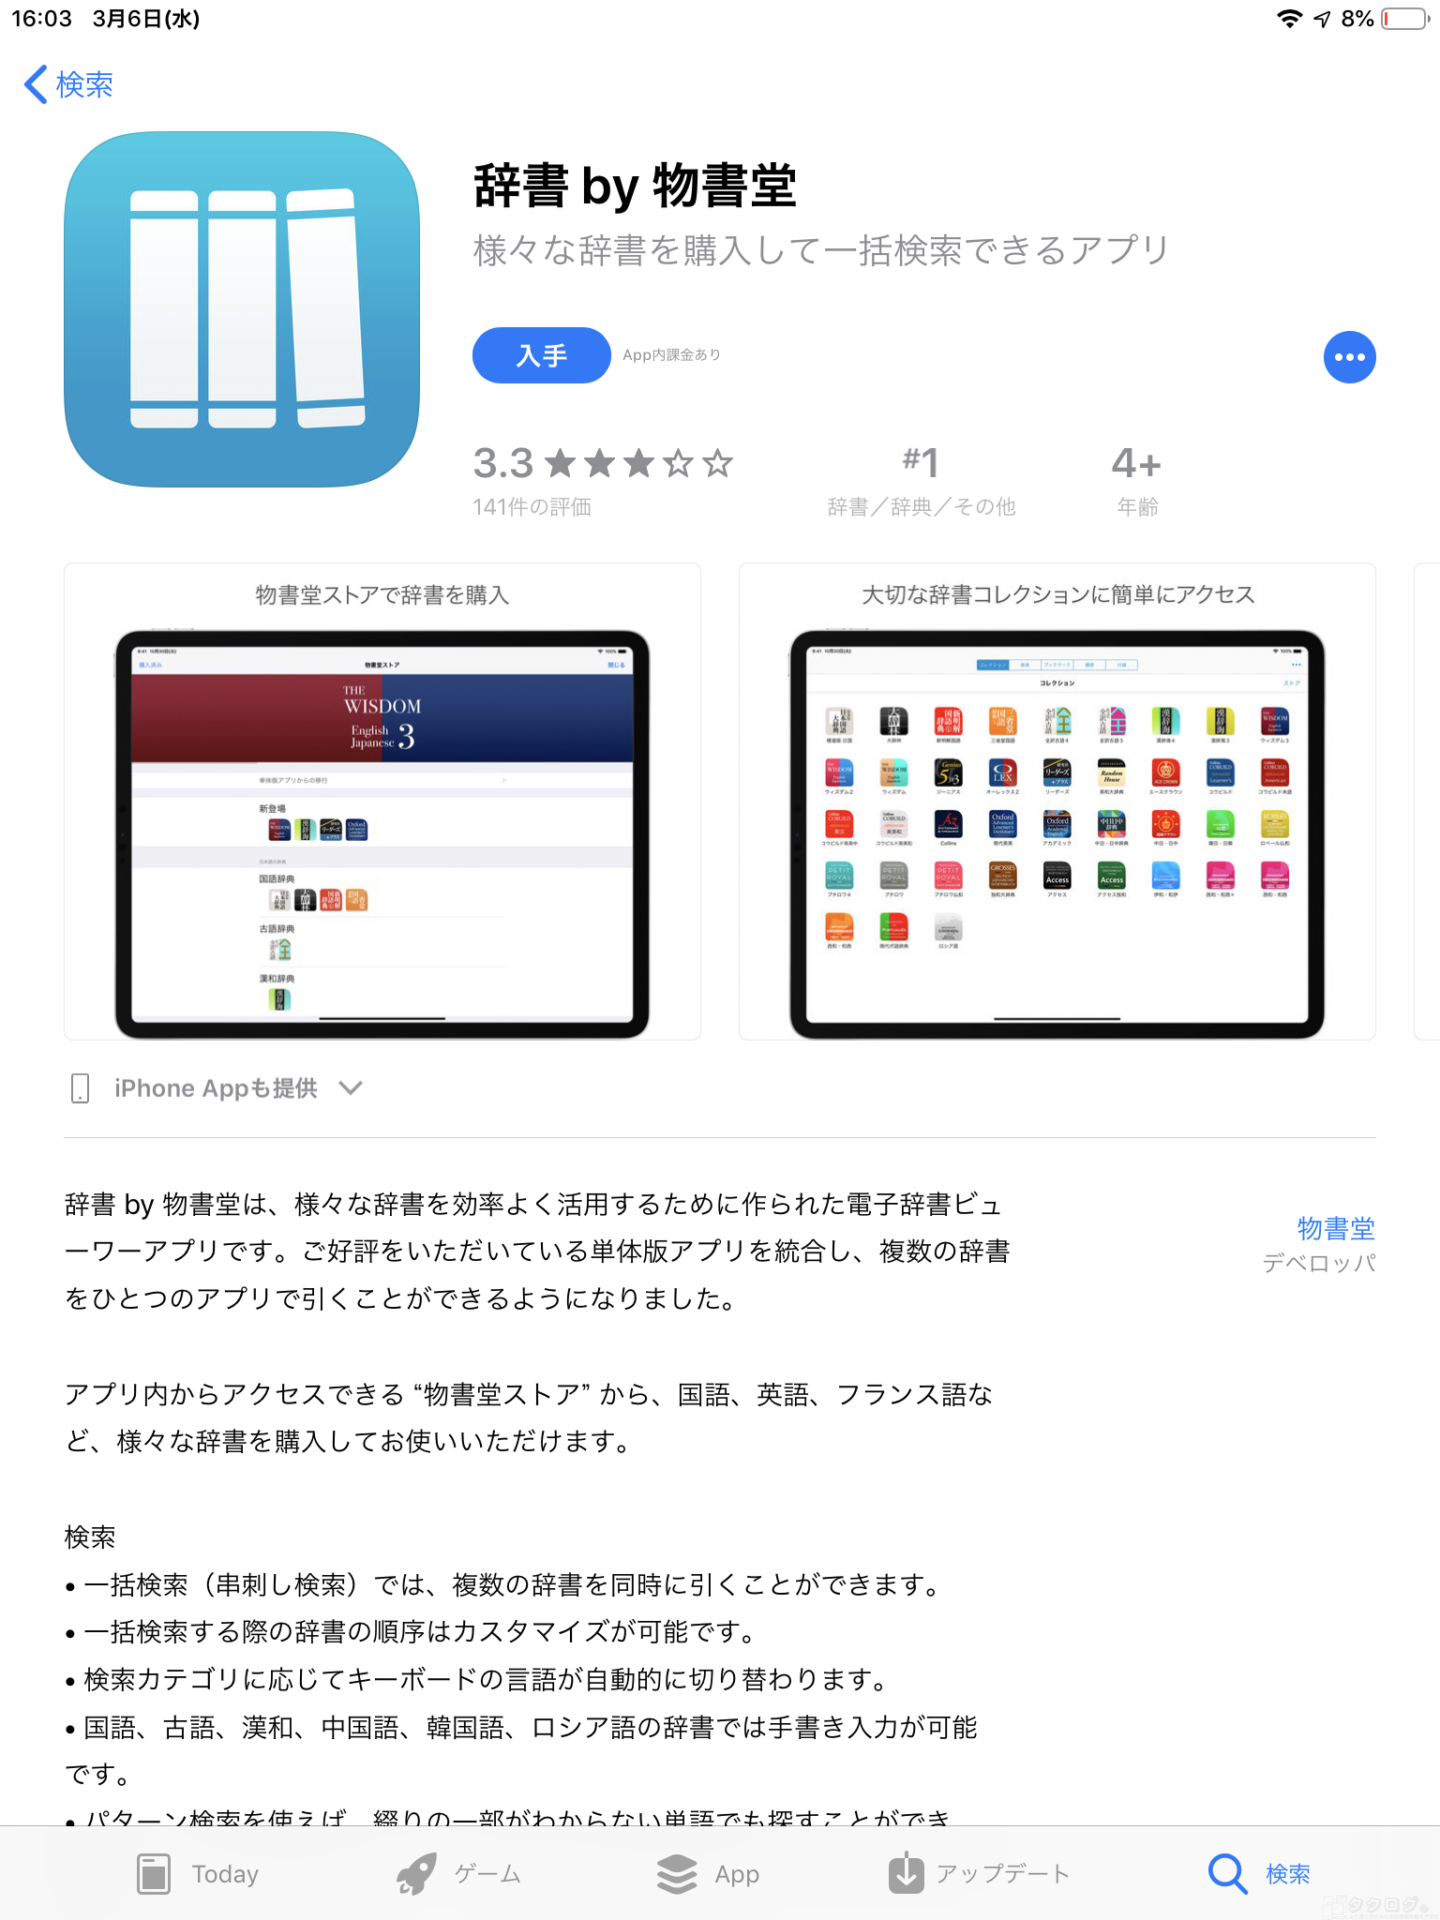 物書堂 Ios向け辞書アプリを統合版に移行 購入済み辞書は無料 串刺し検索も可能に タクログ